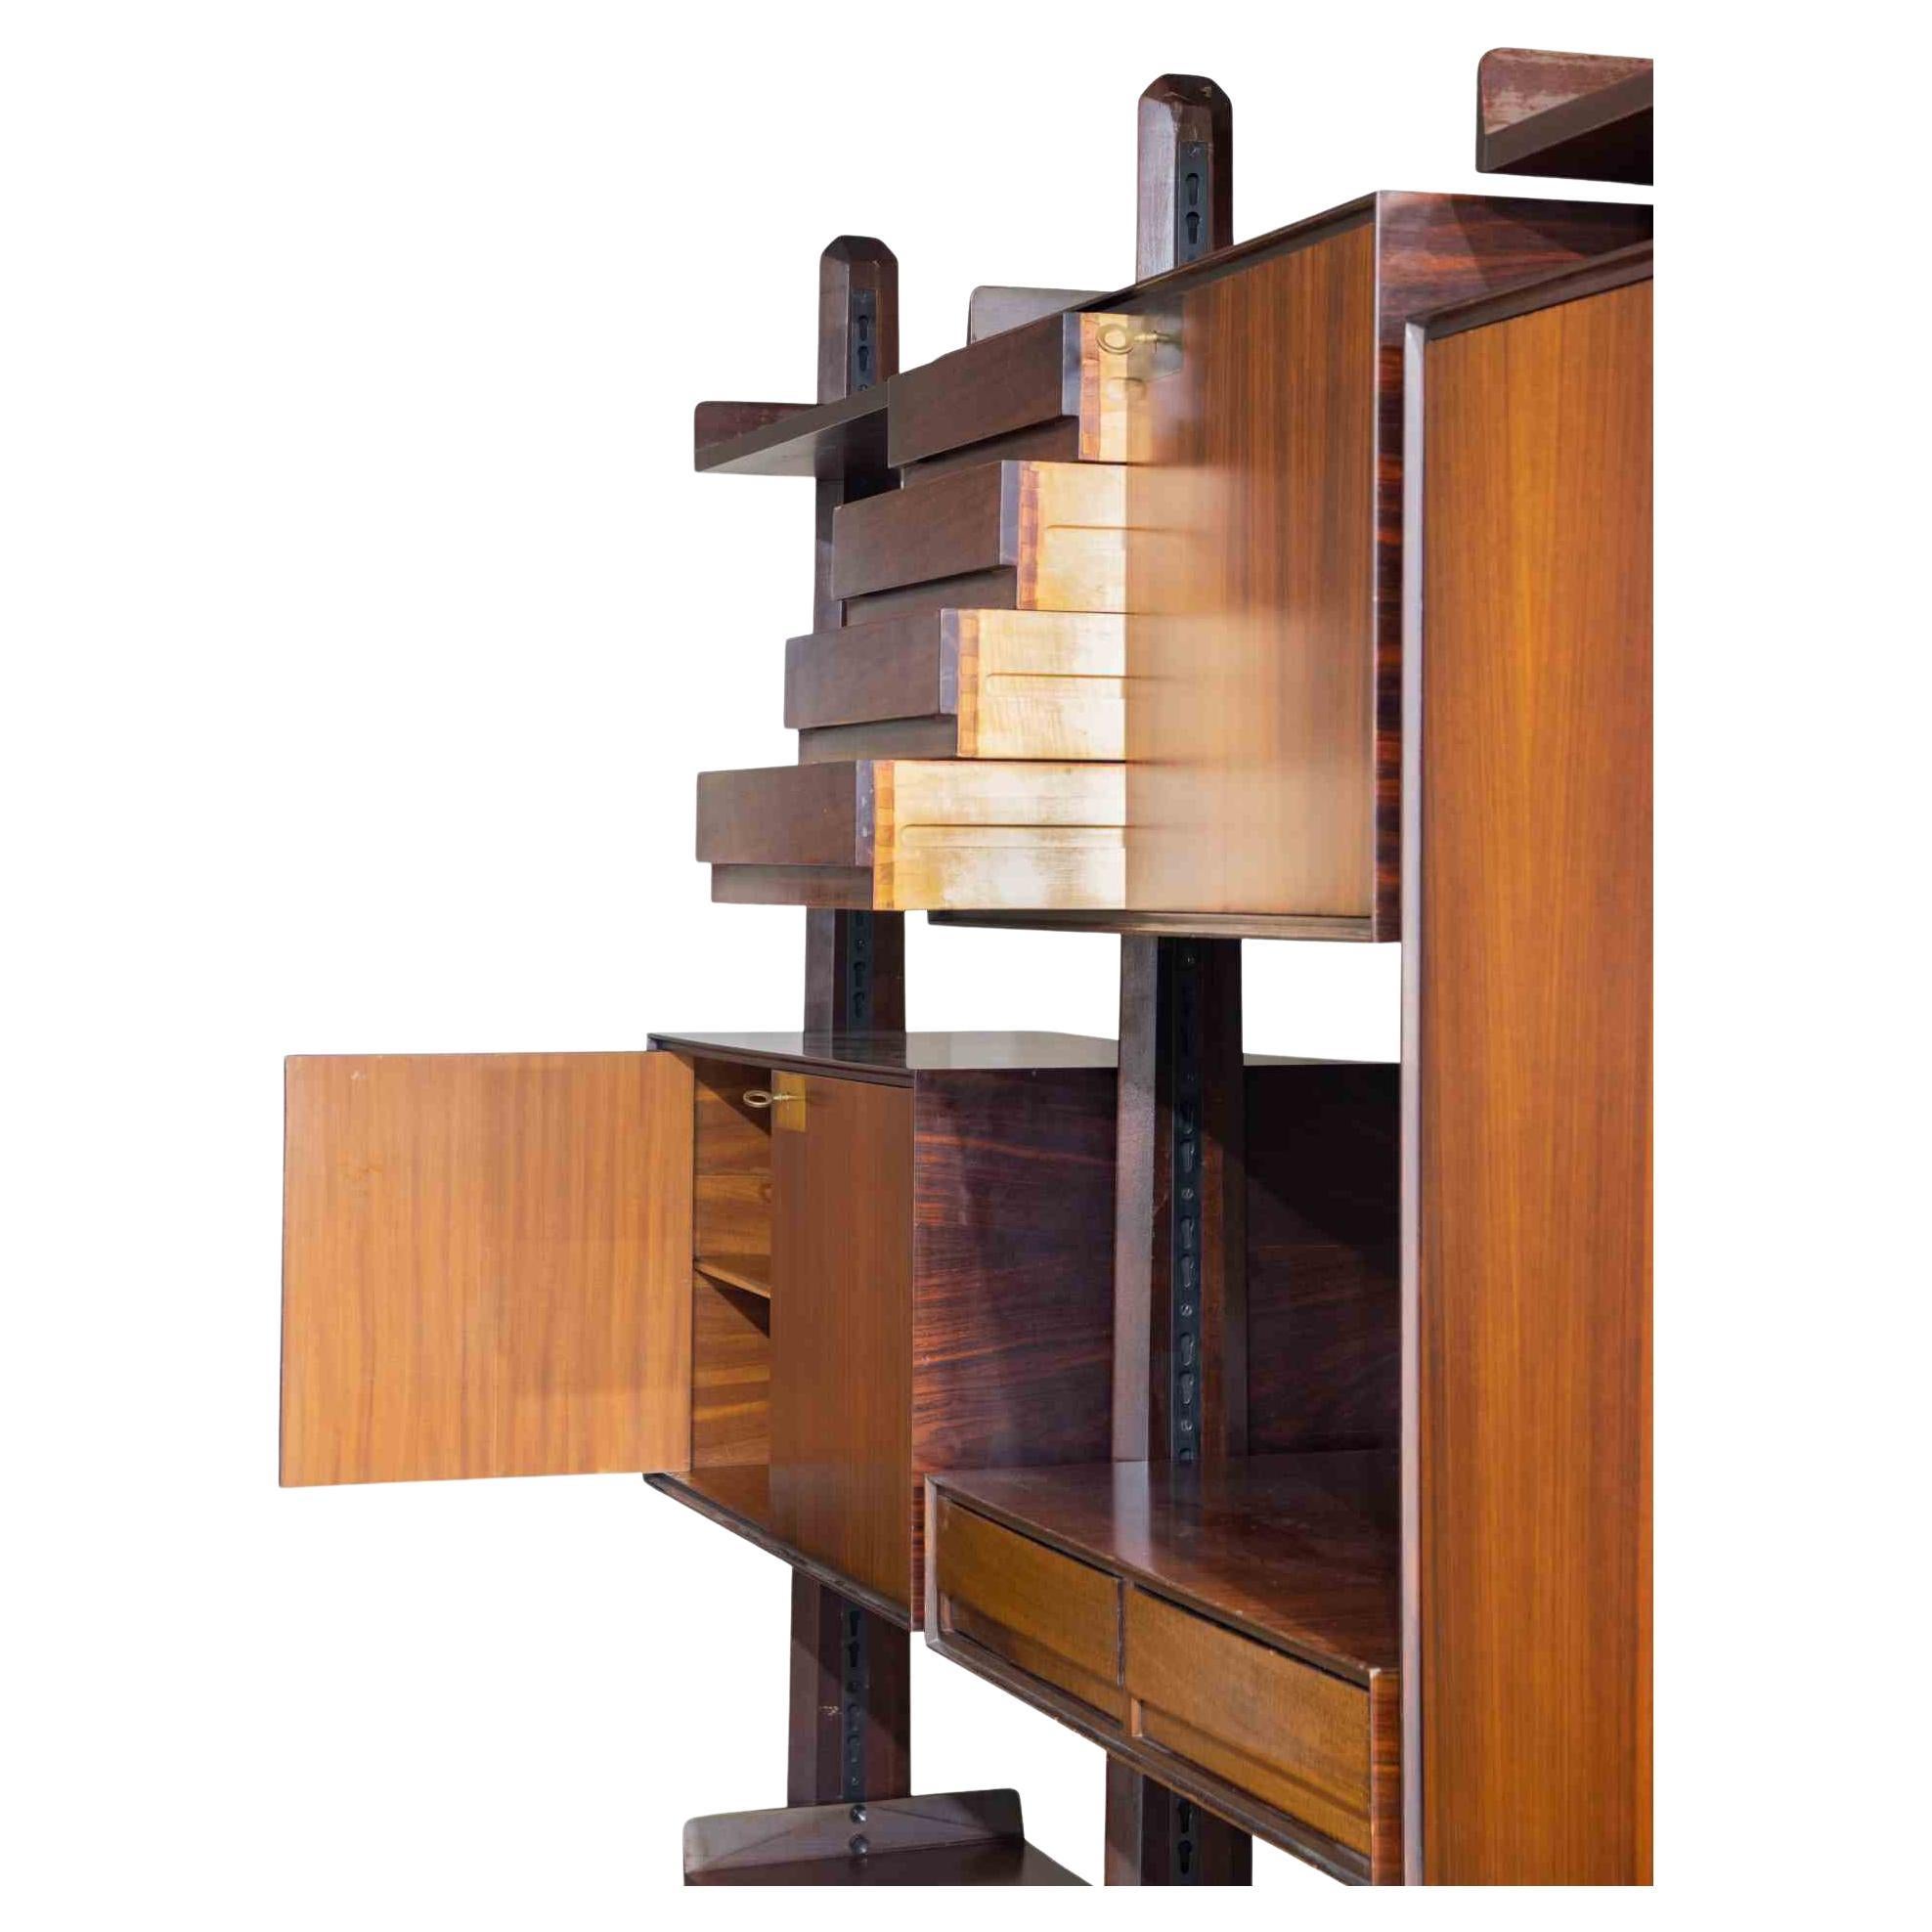 La bibliothèque autoportante est un élément de design original réalisé dans les années 1970 par Vittorio Dassi.

Une élégante bibliothèque en bois.

Parfait pour décorer votre maison !

Les créations de Vittorio Dassi (1893-1973), réalisées